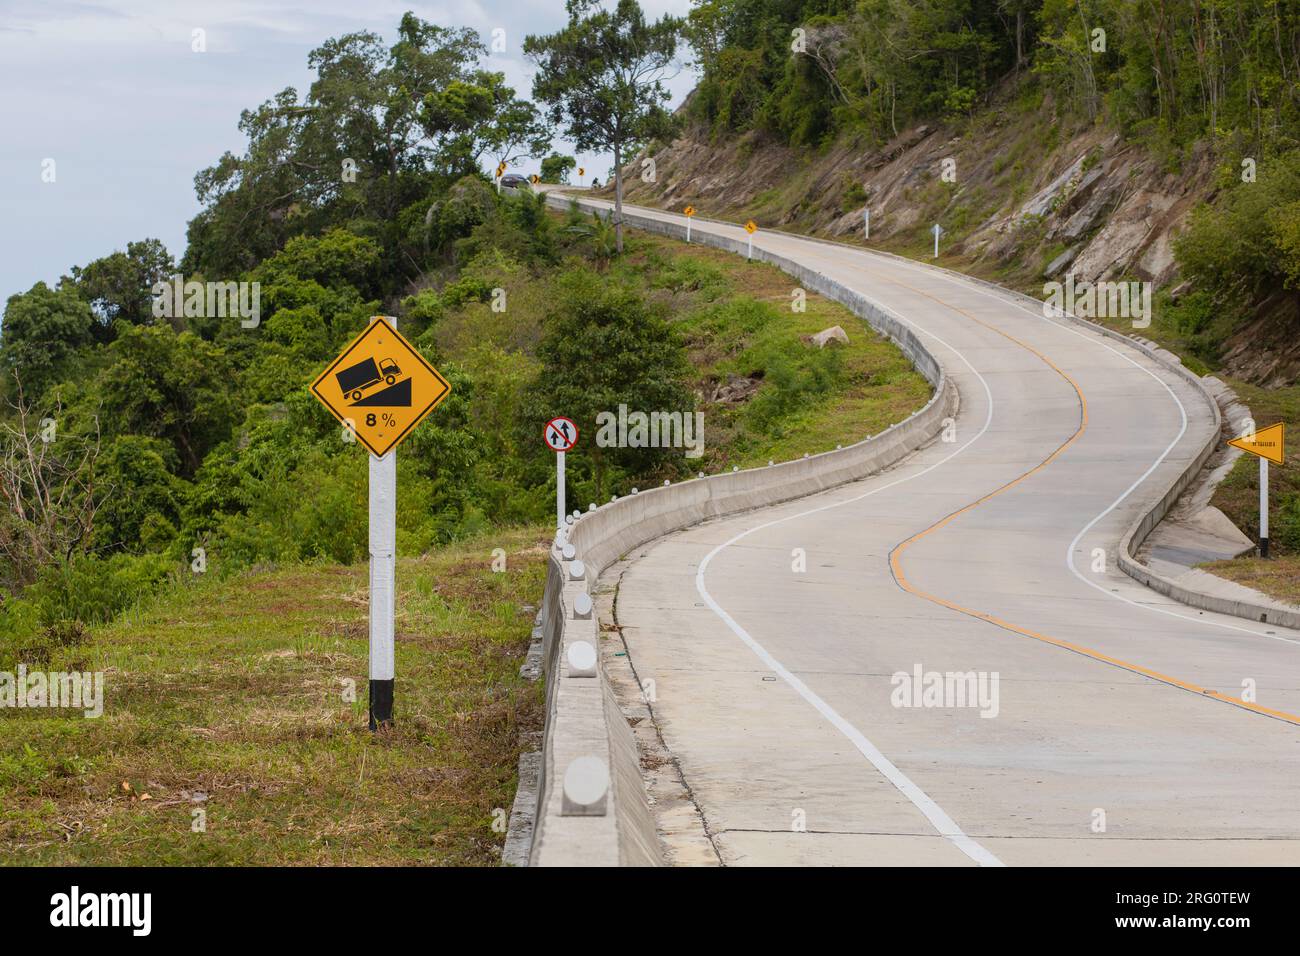 Un segnale segnaletico segnala che la pendenza e la curvatura della strada sono elevate. Foto Stock